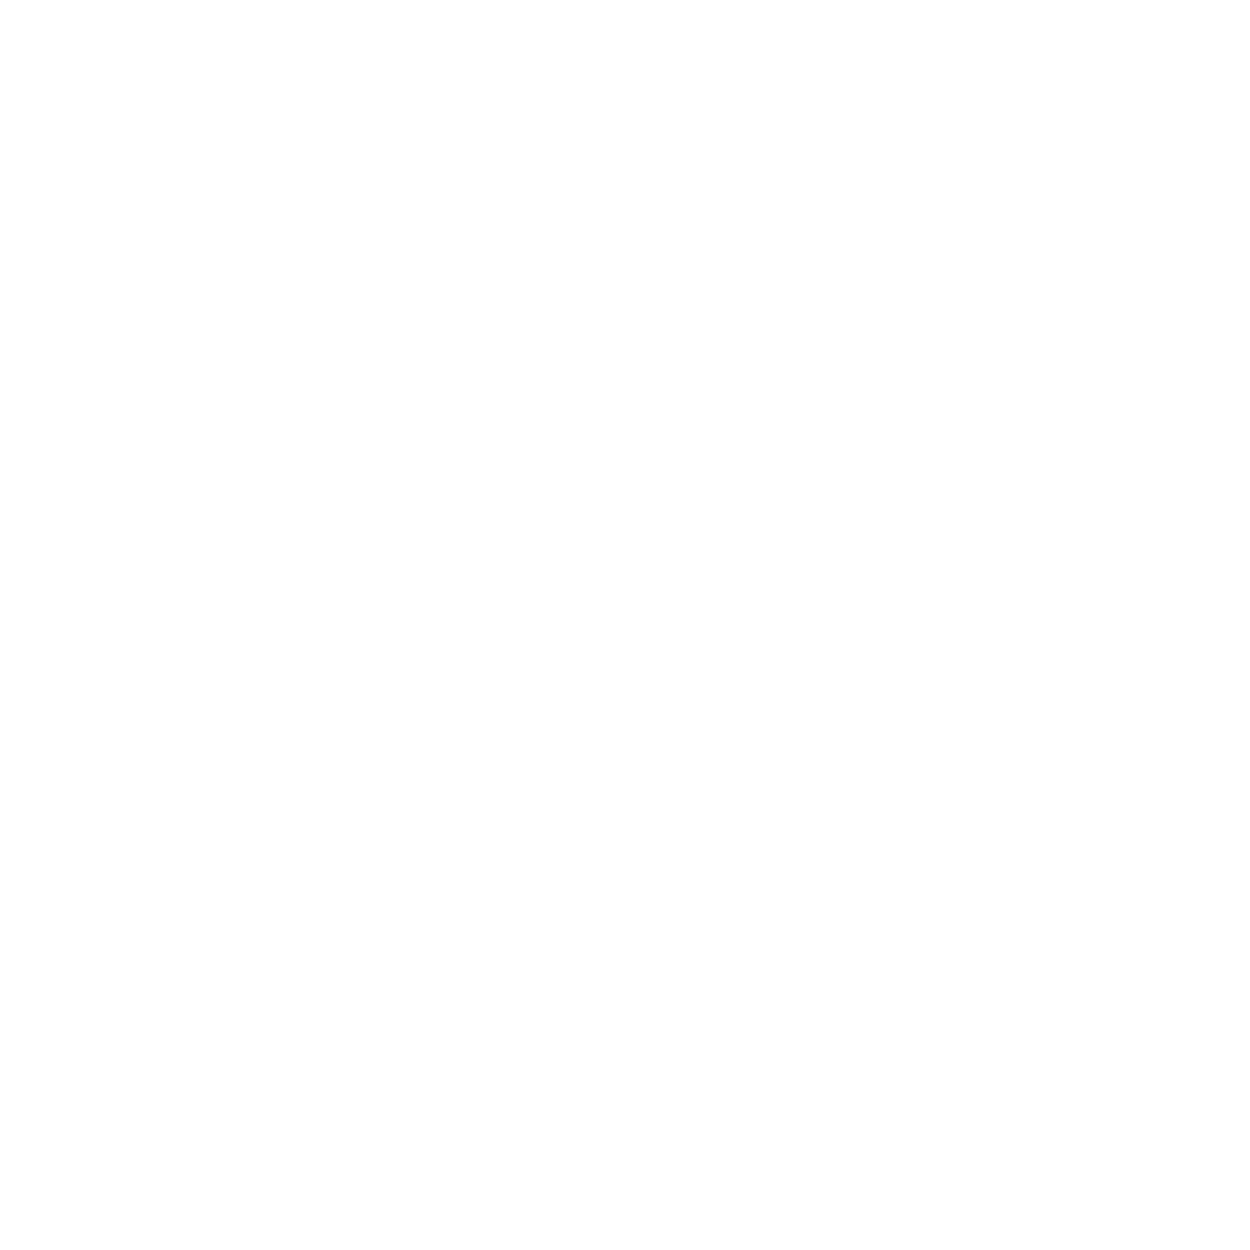 Green Delta Capital